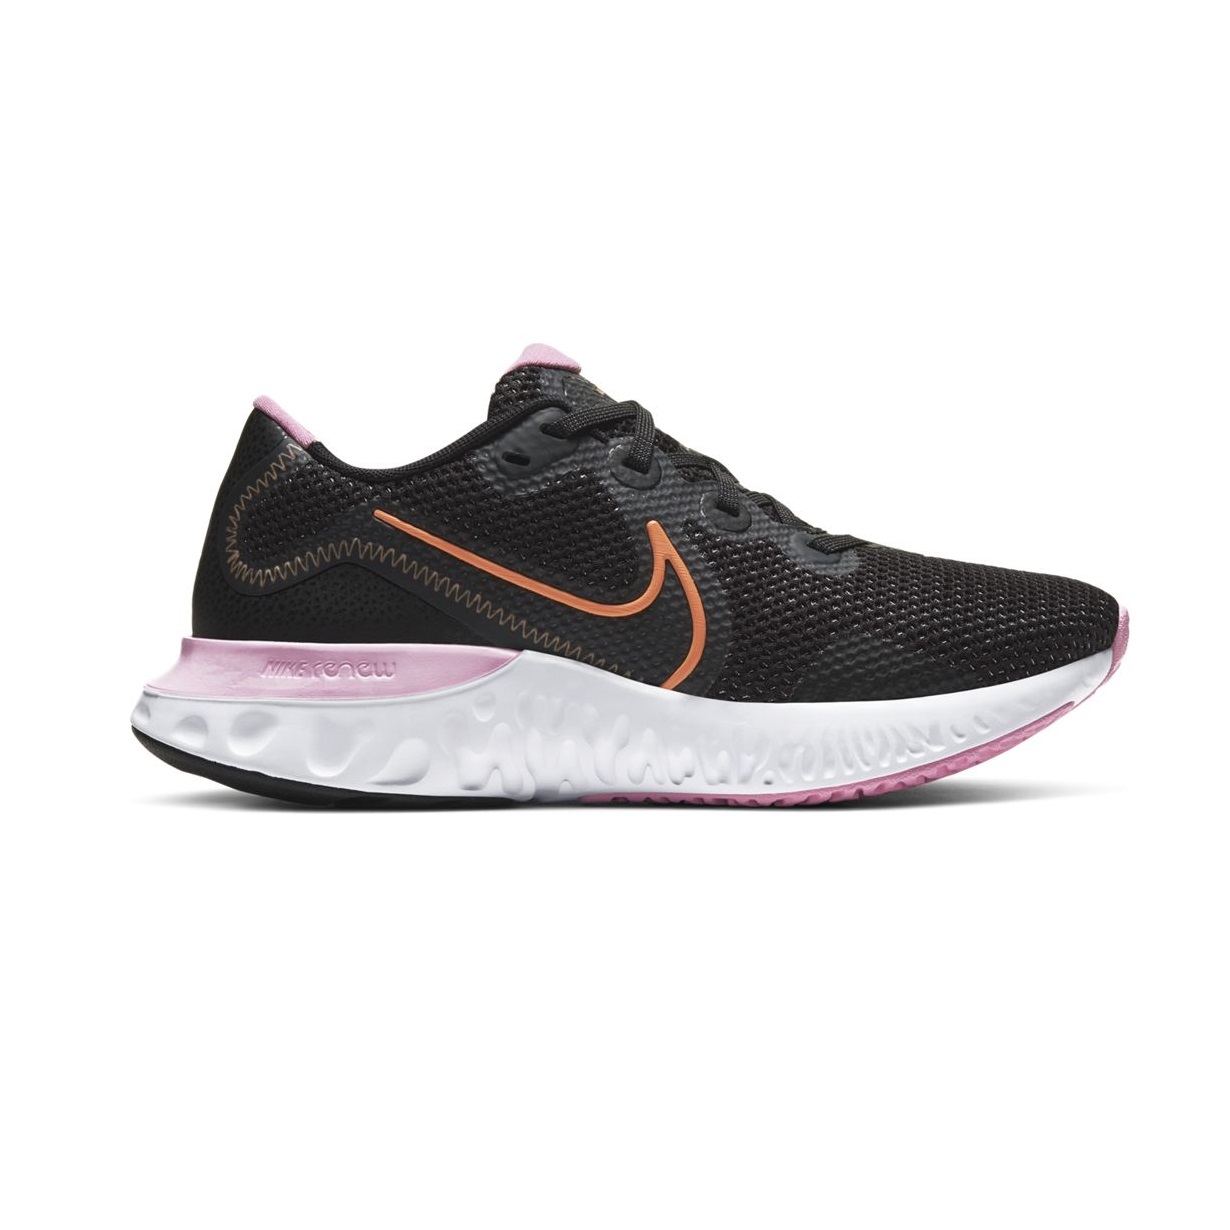 Florecer matraz Por separado Zapatilla de running - Mujer - Nike Renew Run - CK6360-001 | Ferre Sport |  Tienda online de deportes